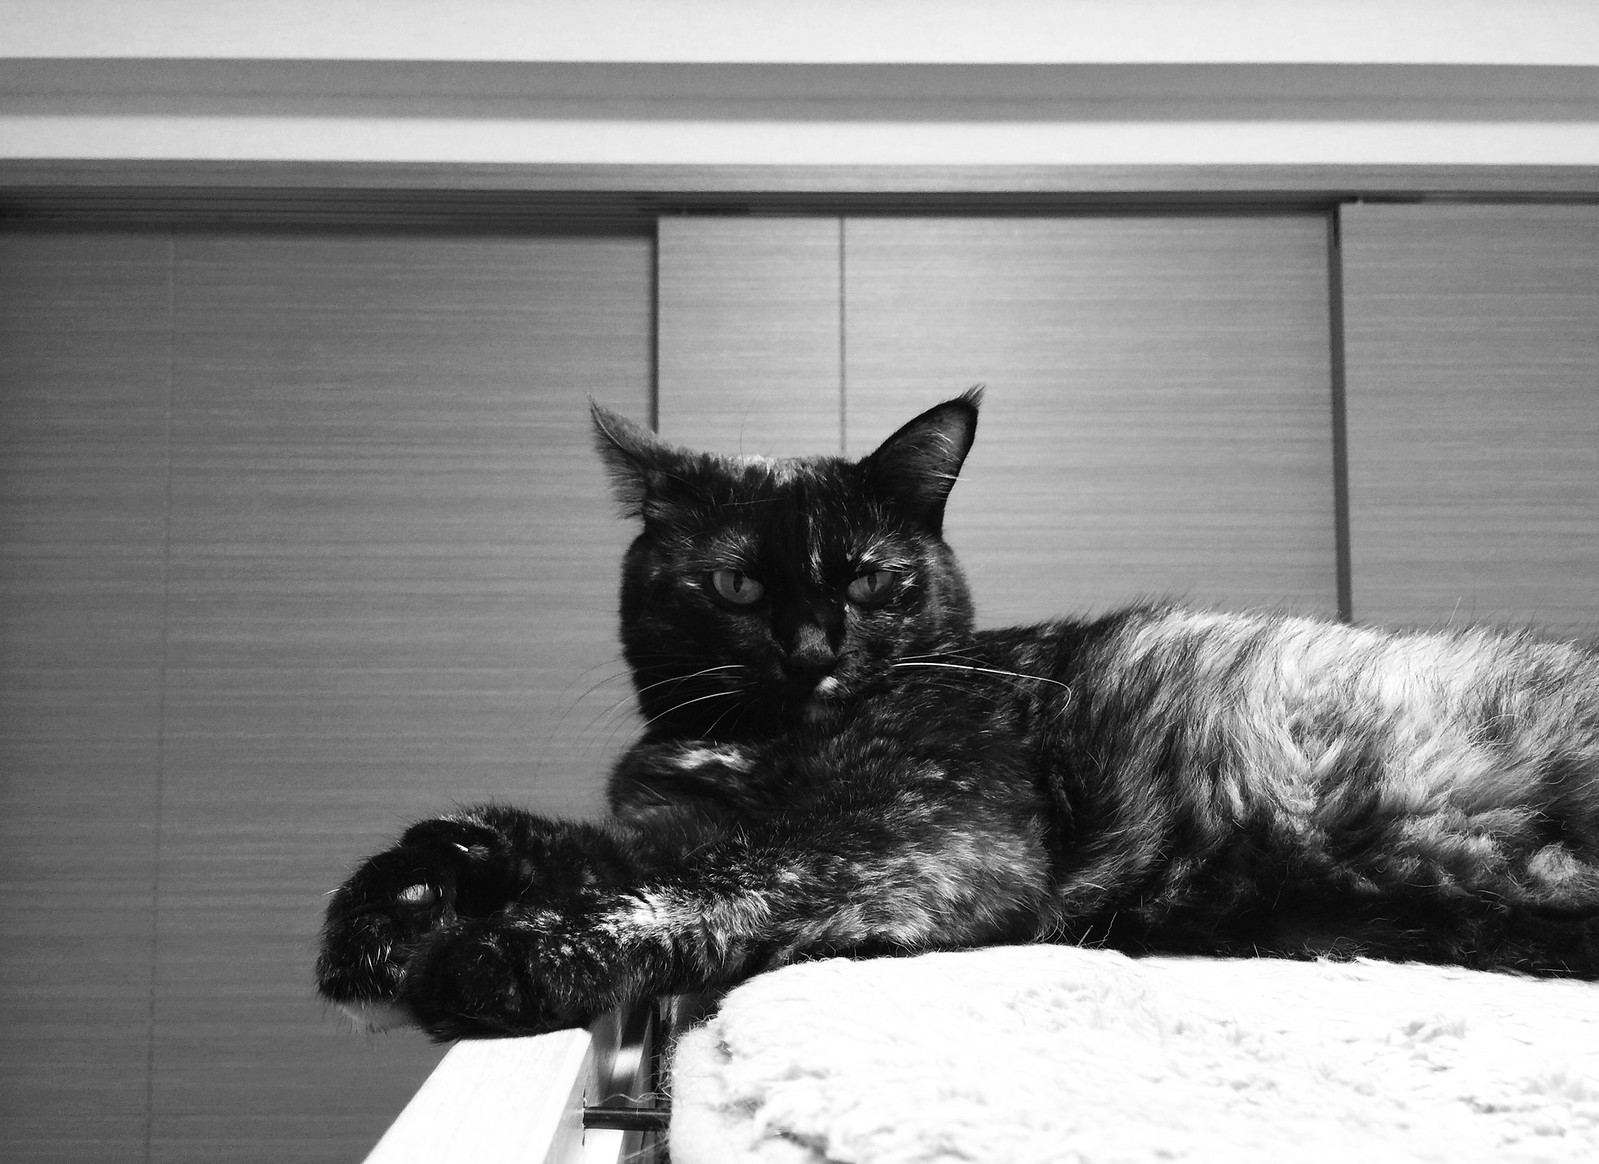 サビ猫のモノクロ写真 猫の写真素材 Cat Press キャットプレス